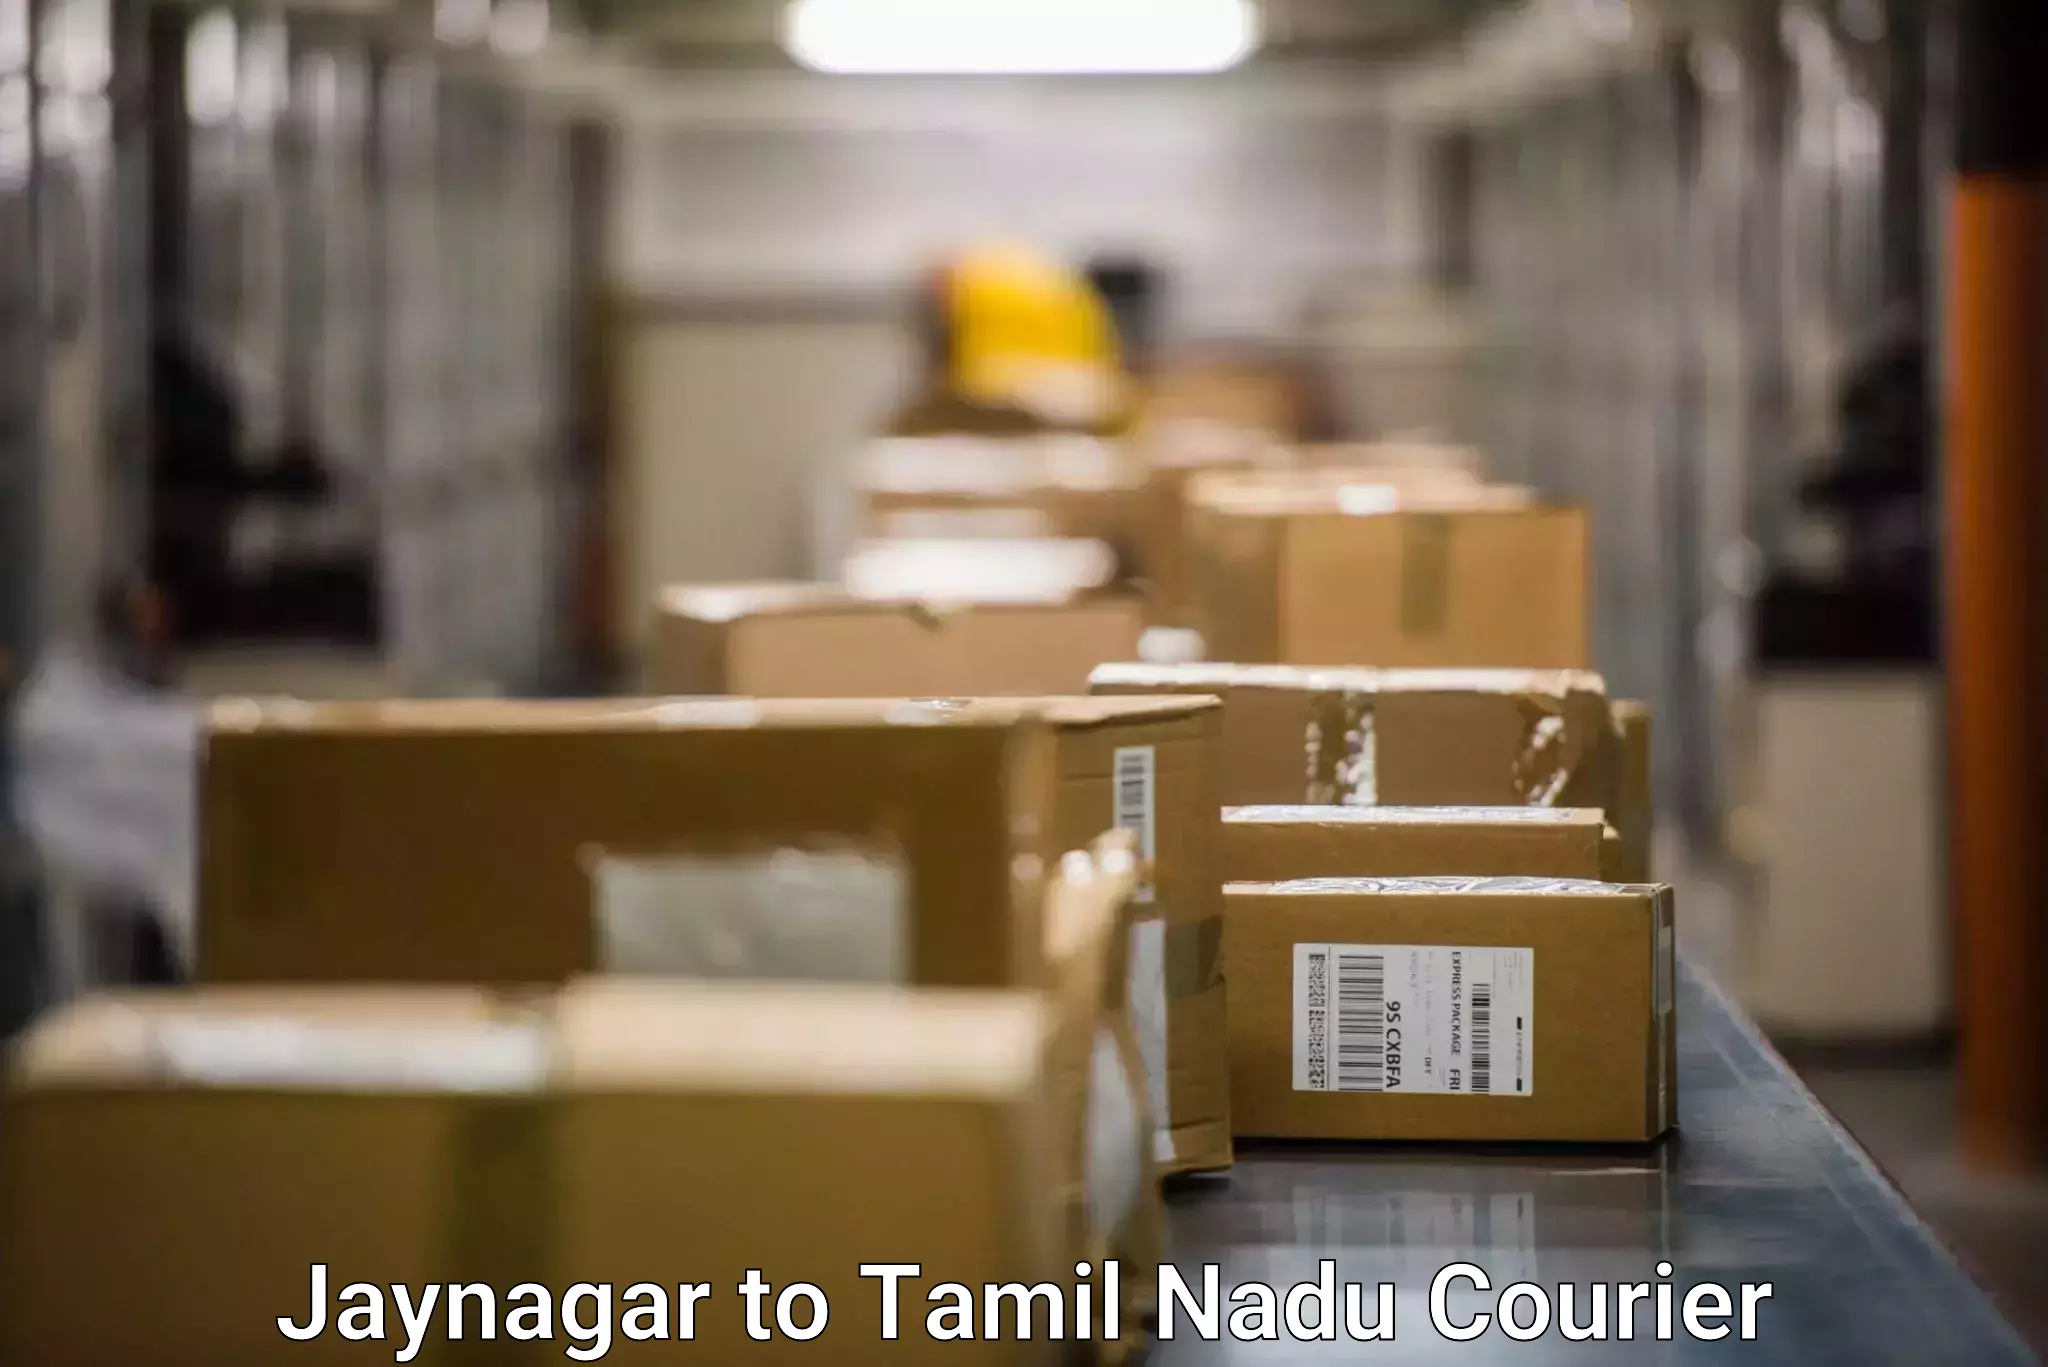 Bulk order courier Jaynagar to Sivakasi